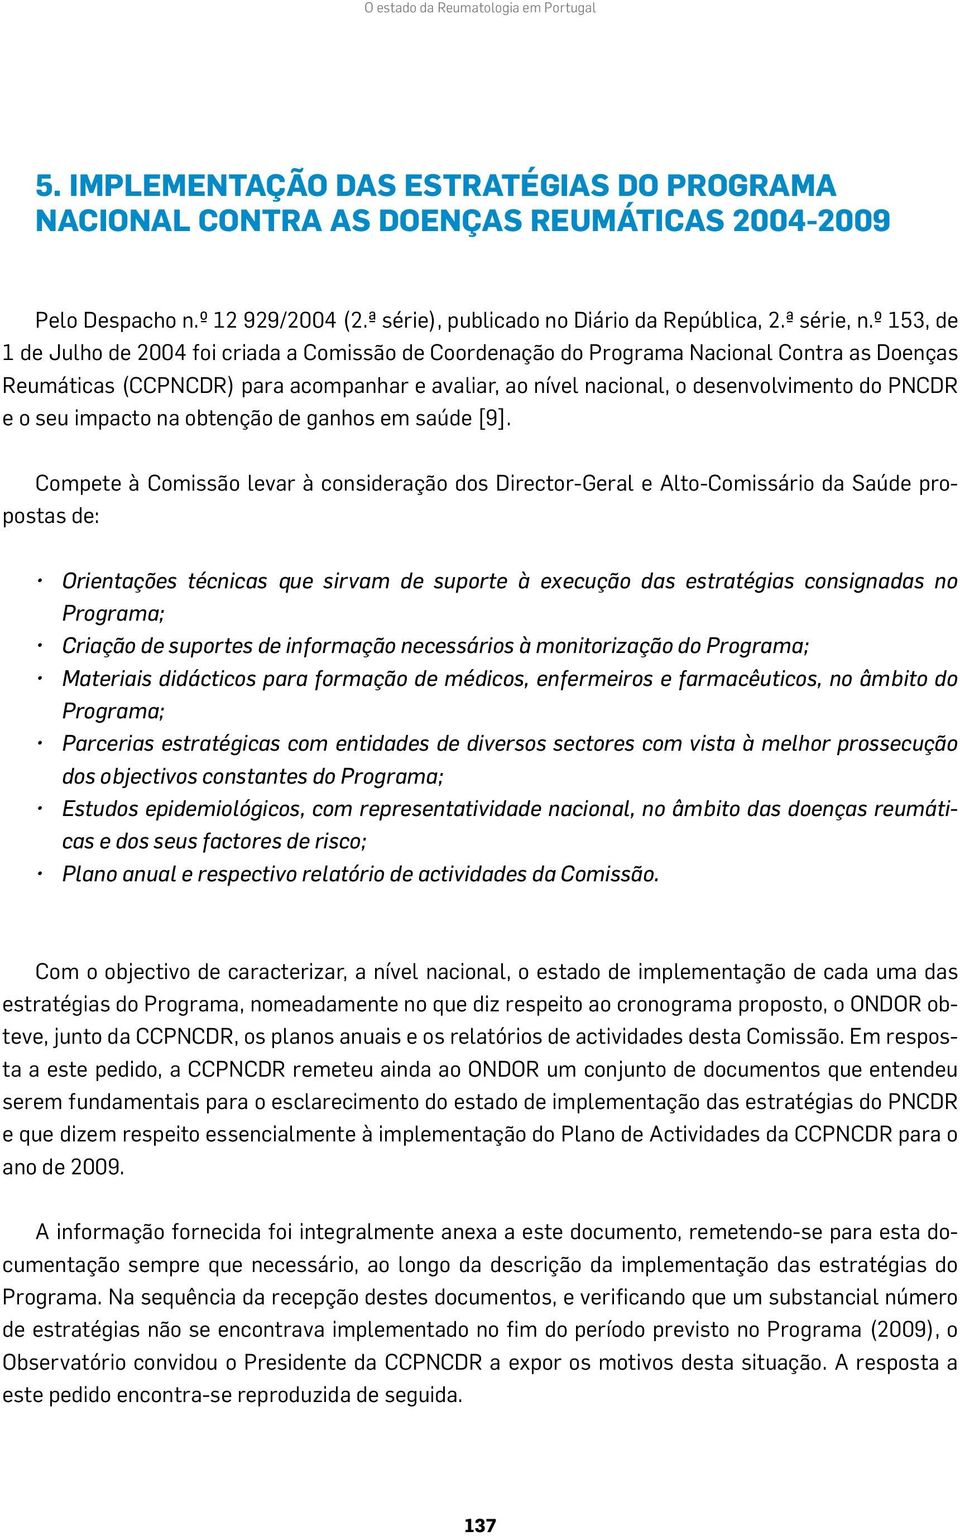 º 153, de 1 de Julho de 2004 foi criada a Comissão de Coordenação do Programa Nacional Contra as Doenças Reumáticas (CCPNCDR) para acompanhar e avaliar, ao nível nacional, o desenvolvimento do PNCDR